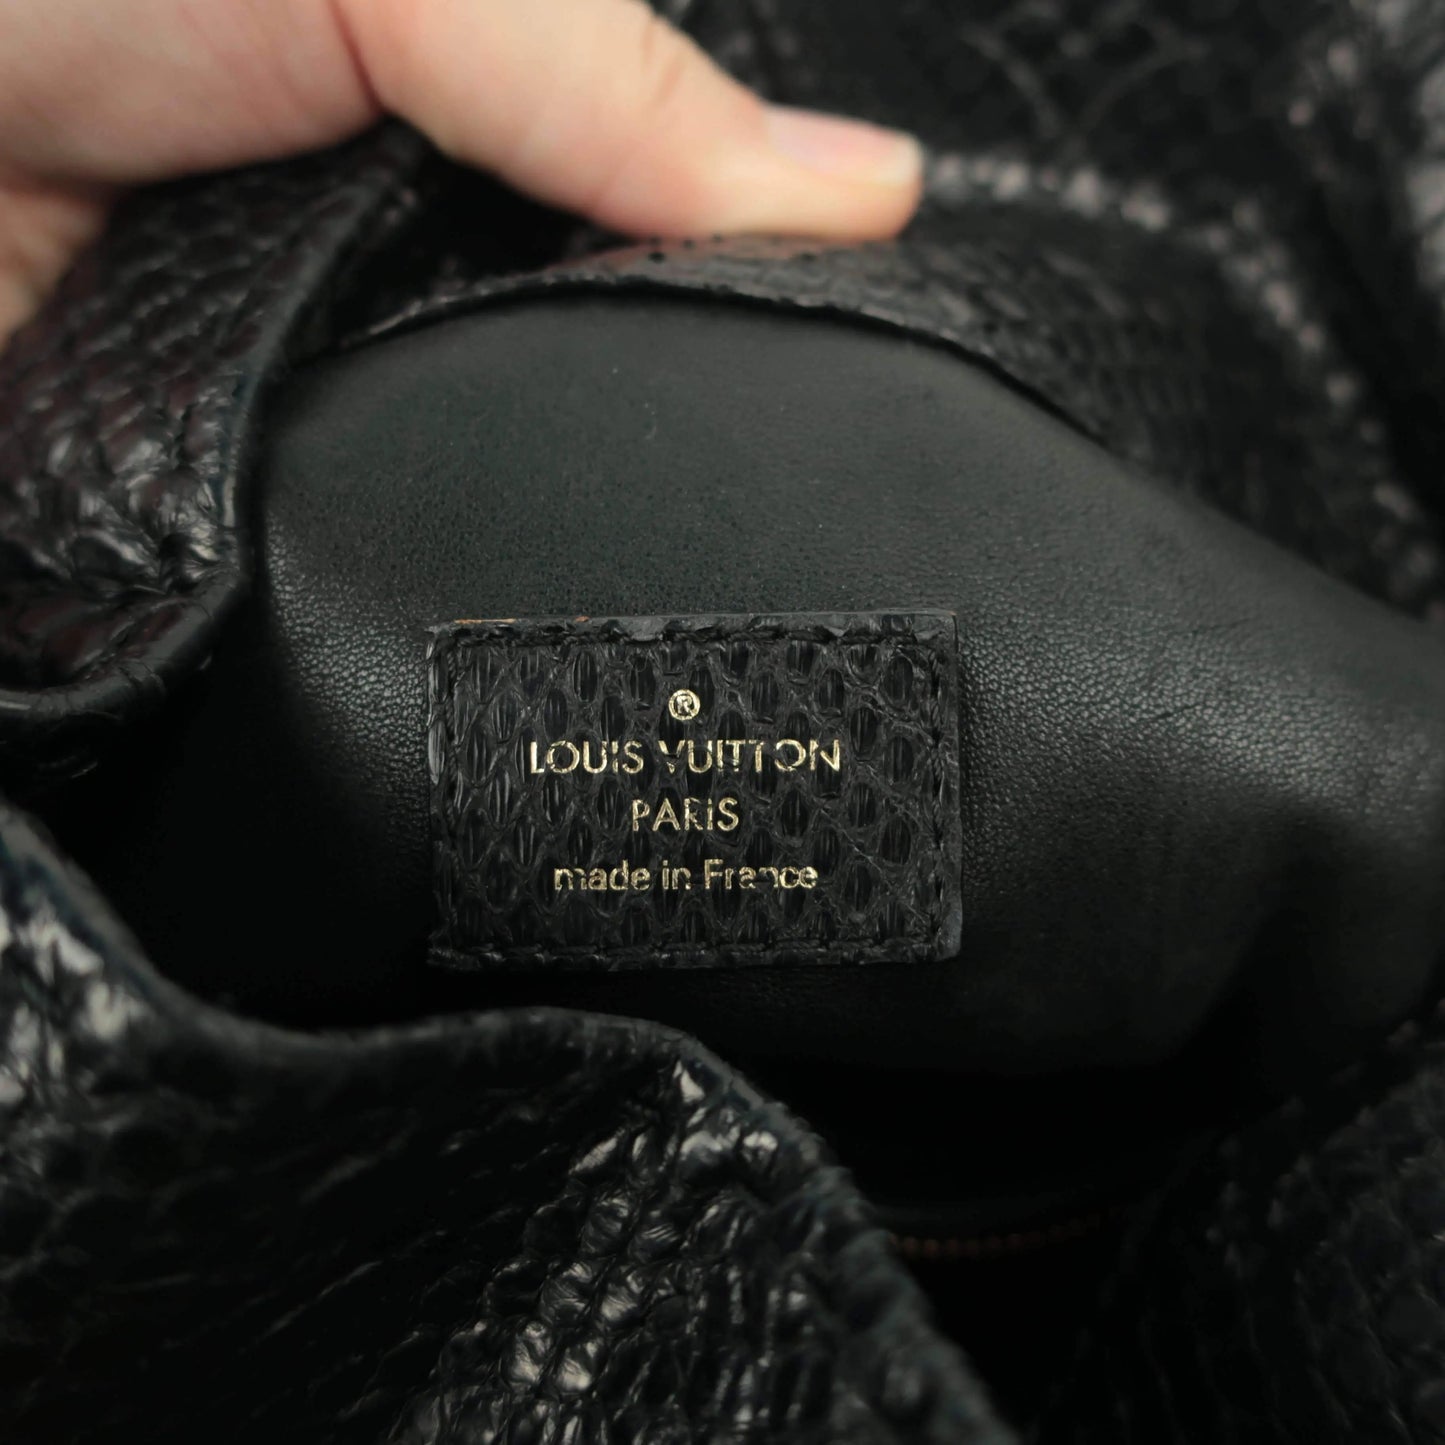 Louis Vuitton Louis Vuitton Limited Edition Artsy MM Noir Python Bag LVBagaholic